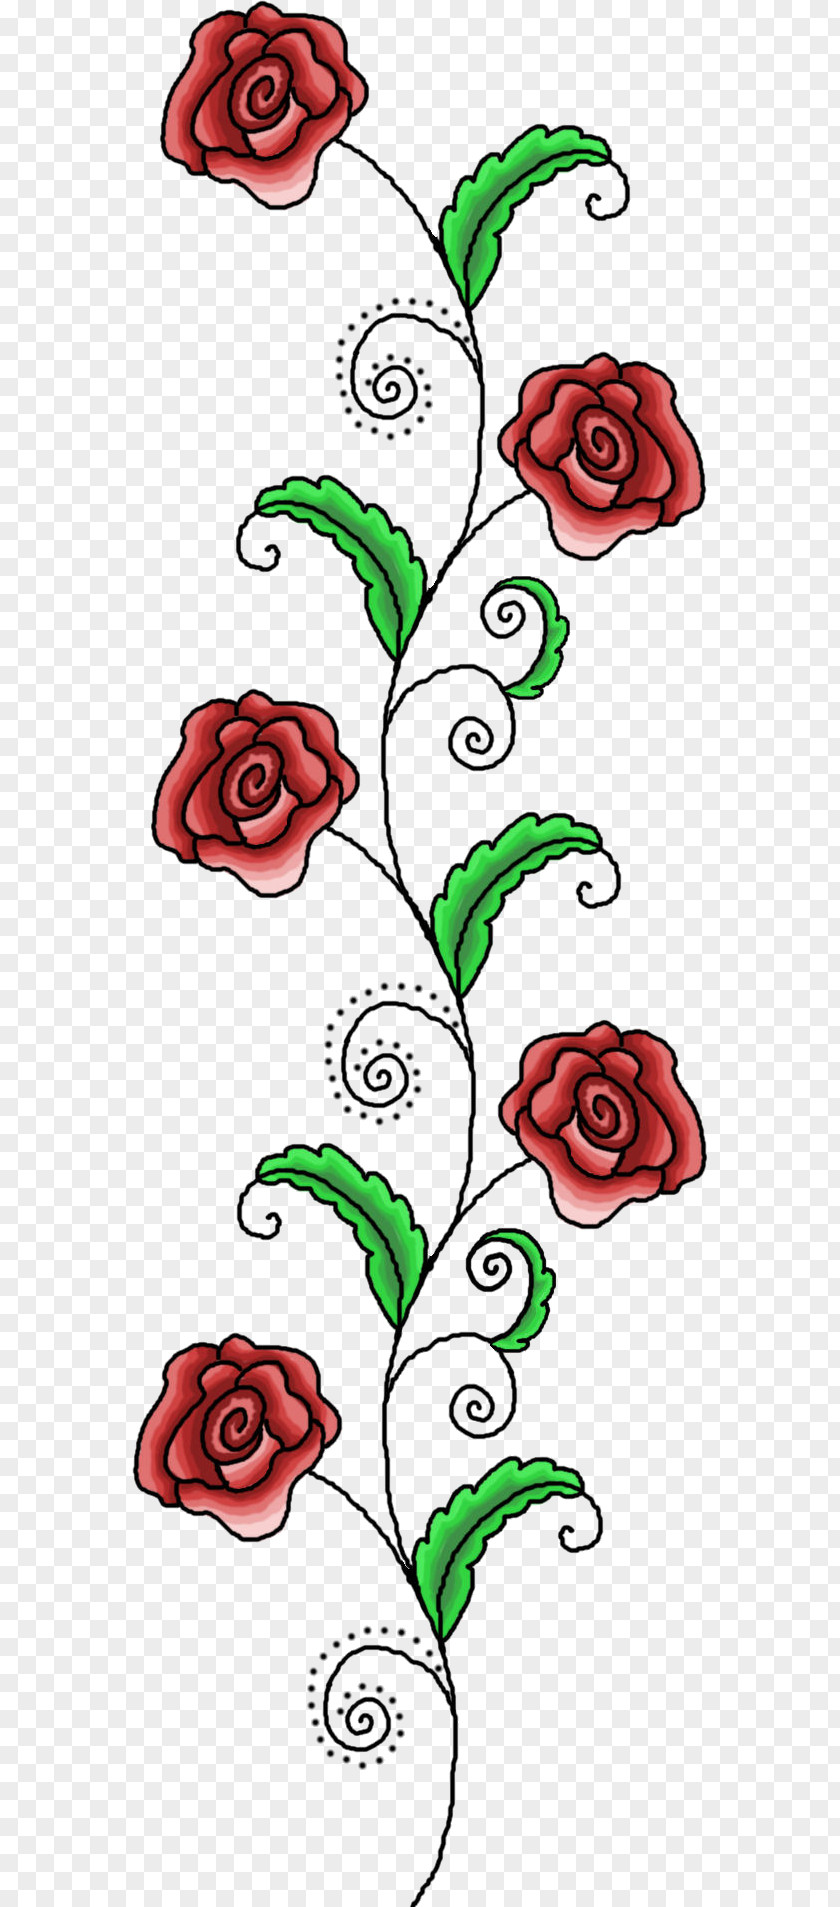 Flower Garden Roses Floral Design Vignette Drawing Clip Art PNG